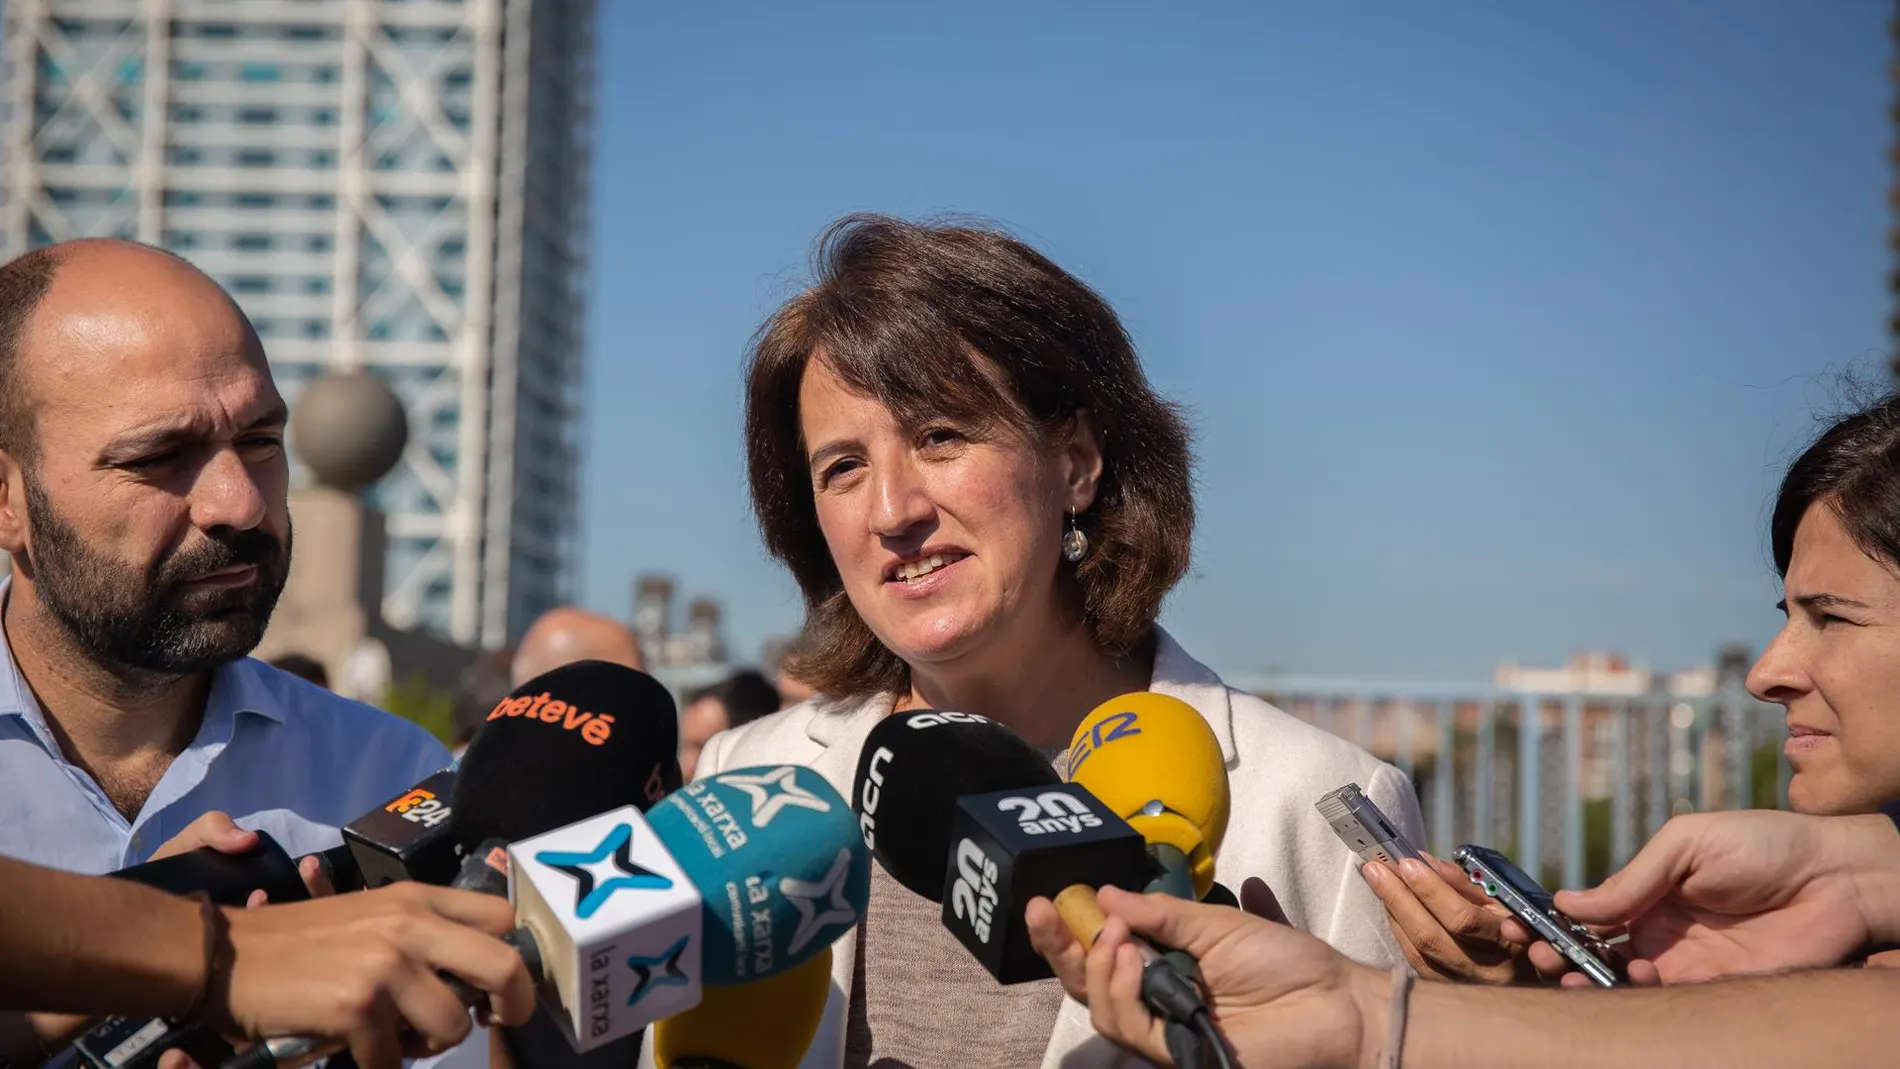 La presidenta de la Asamblea Nacional Catalana (ANC), Elisenda Paluzi ofrece declaraciones a los medios de comunicación, a su derecha el portavoz de Òmnium Cultural, Marcel Mauri. Estas entidades han convocado una nueva manifestación para el próximo sábad